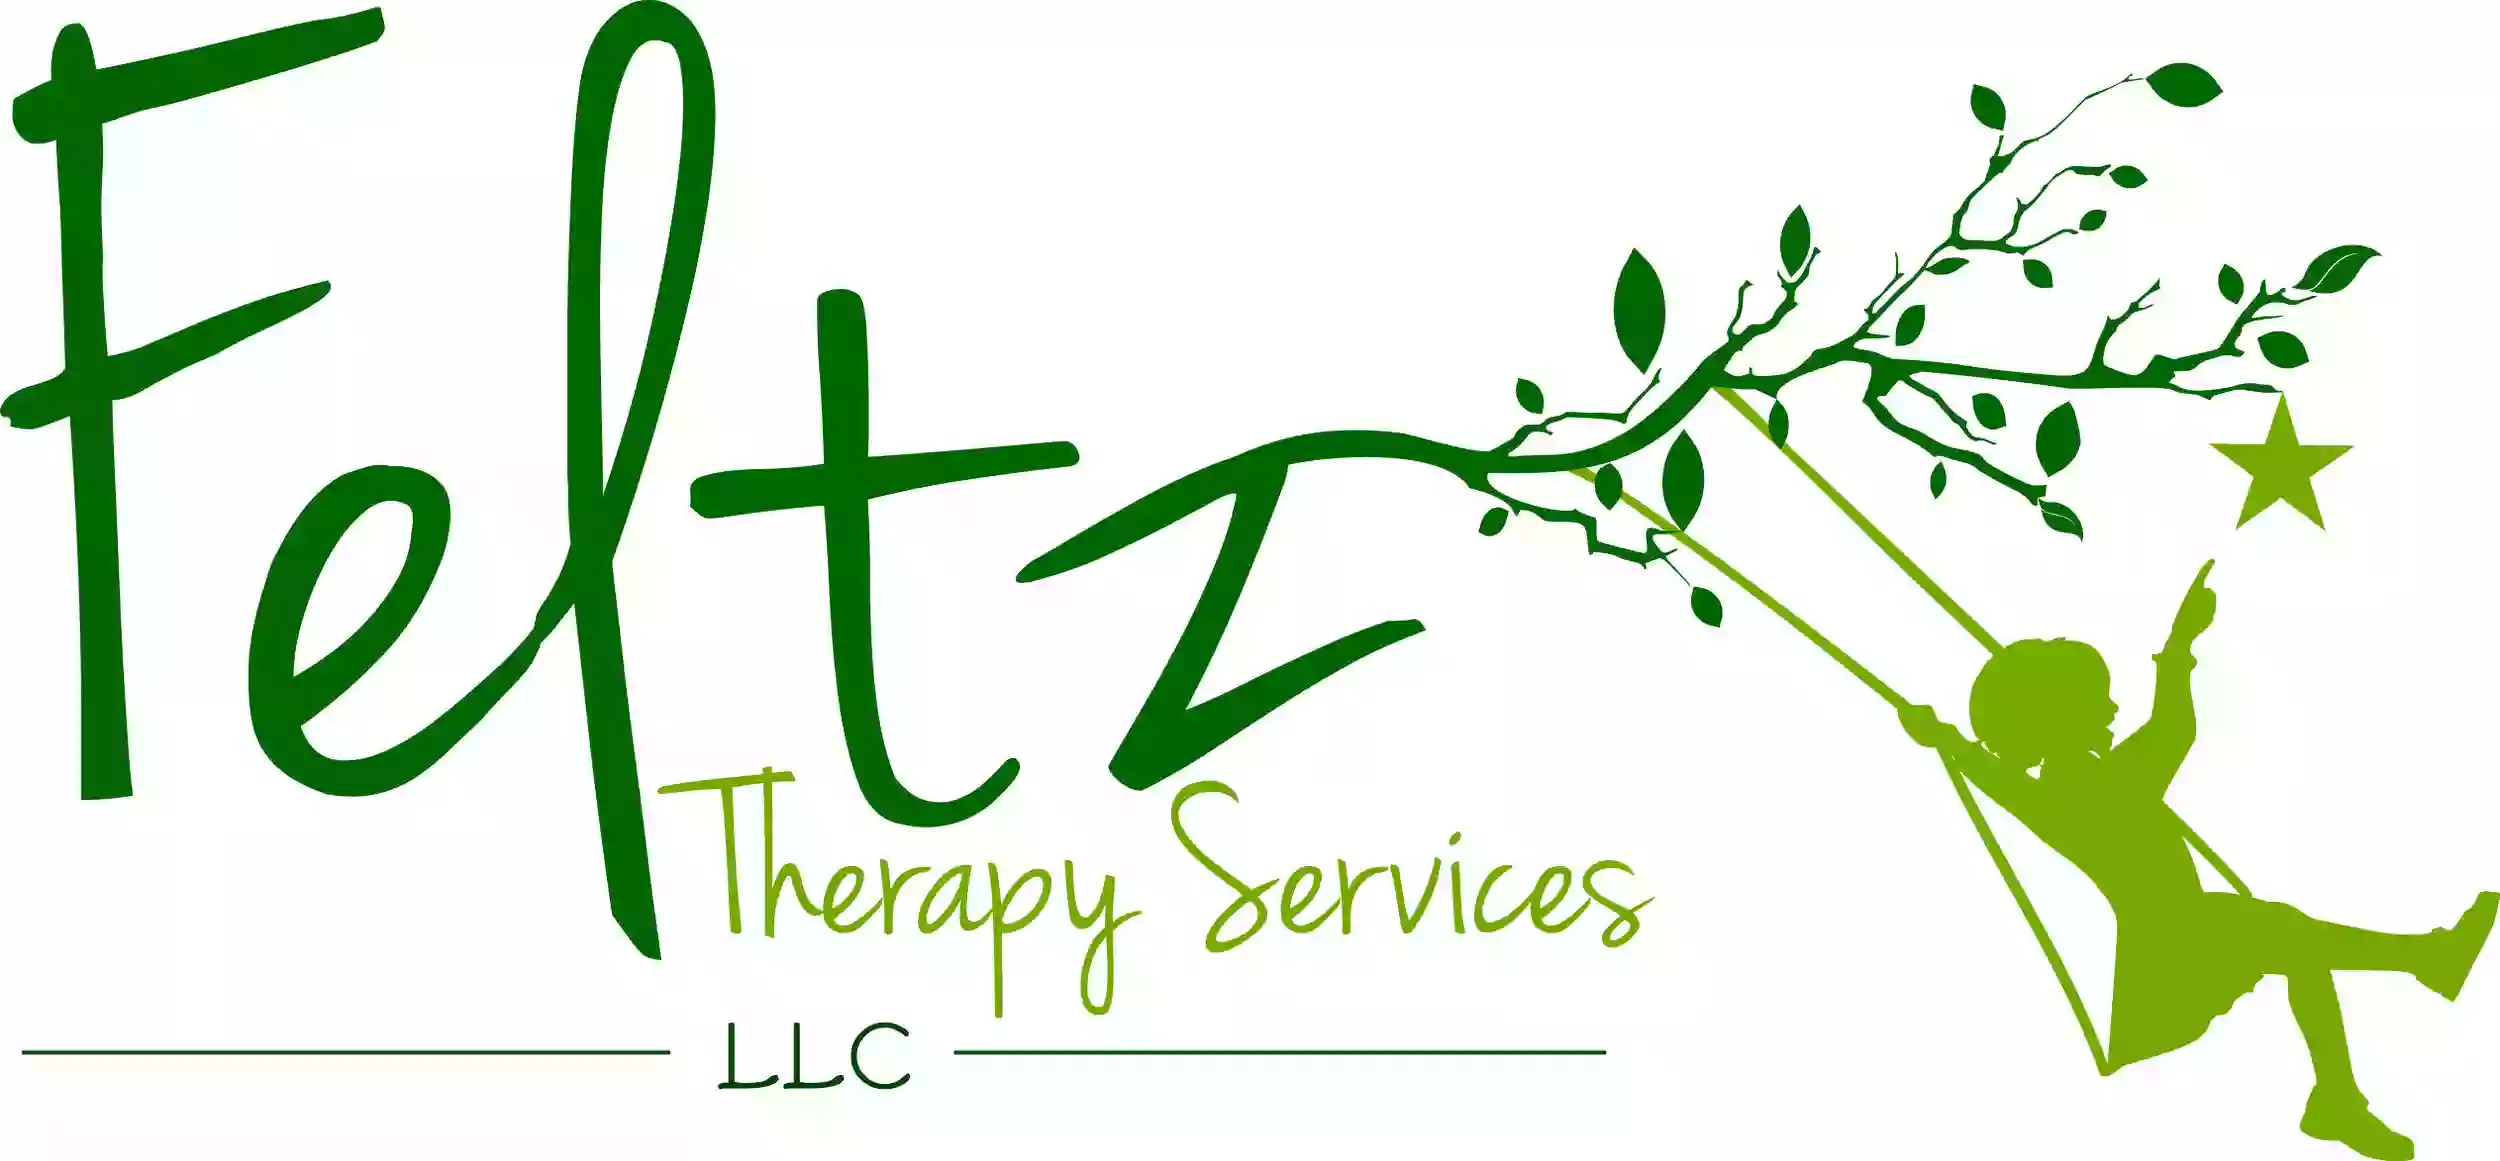 Feltz Therapy Services, LLC